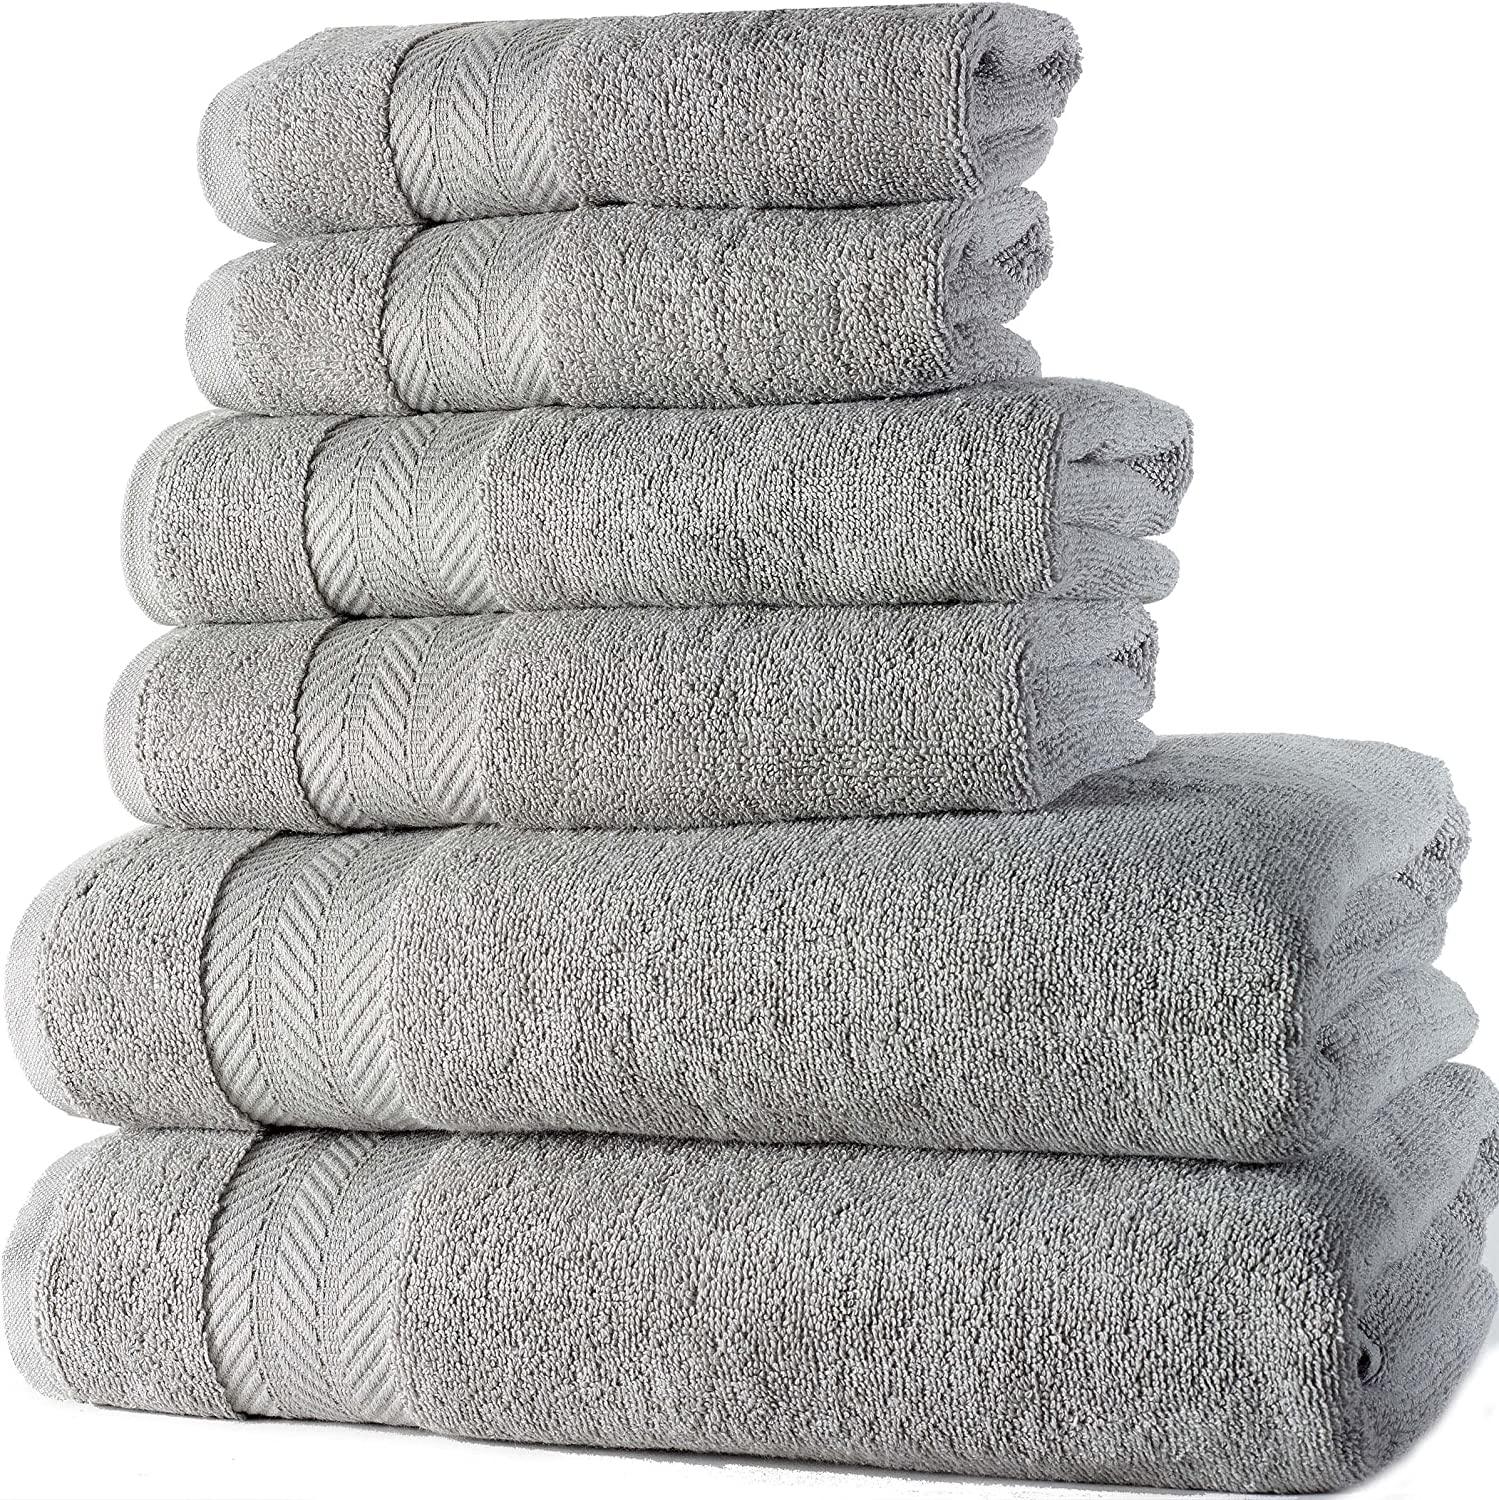 Luxury 100% Cotton Bath Towels - 6 Piece Set, Extra Soft & Fluffy, Hotel  Bath Towel Set - 2 Bathroom Towels, 2 Hand Towels & 2 Washcloths - Gray